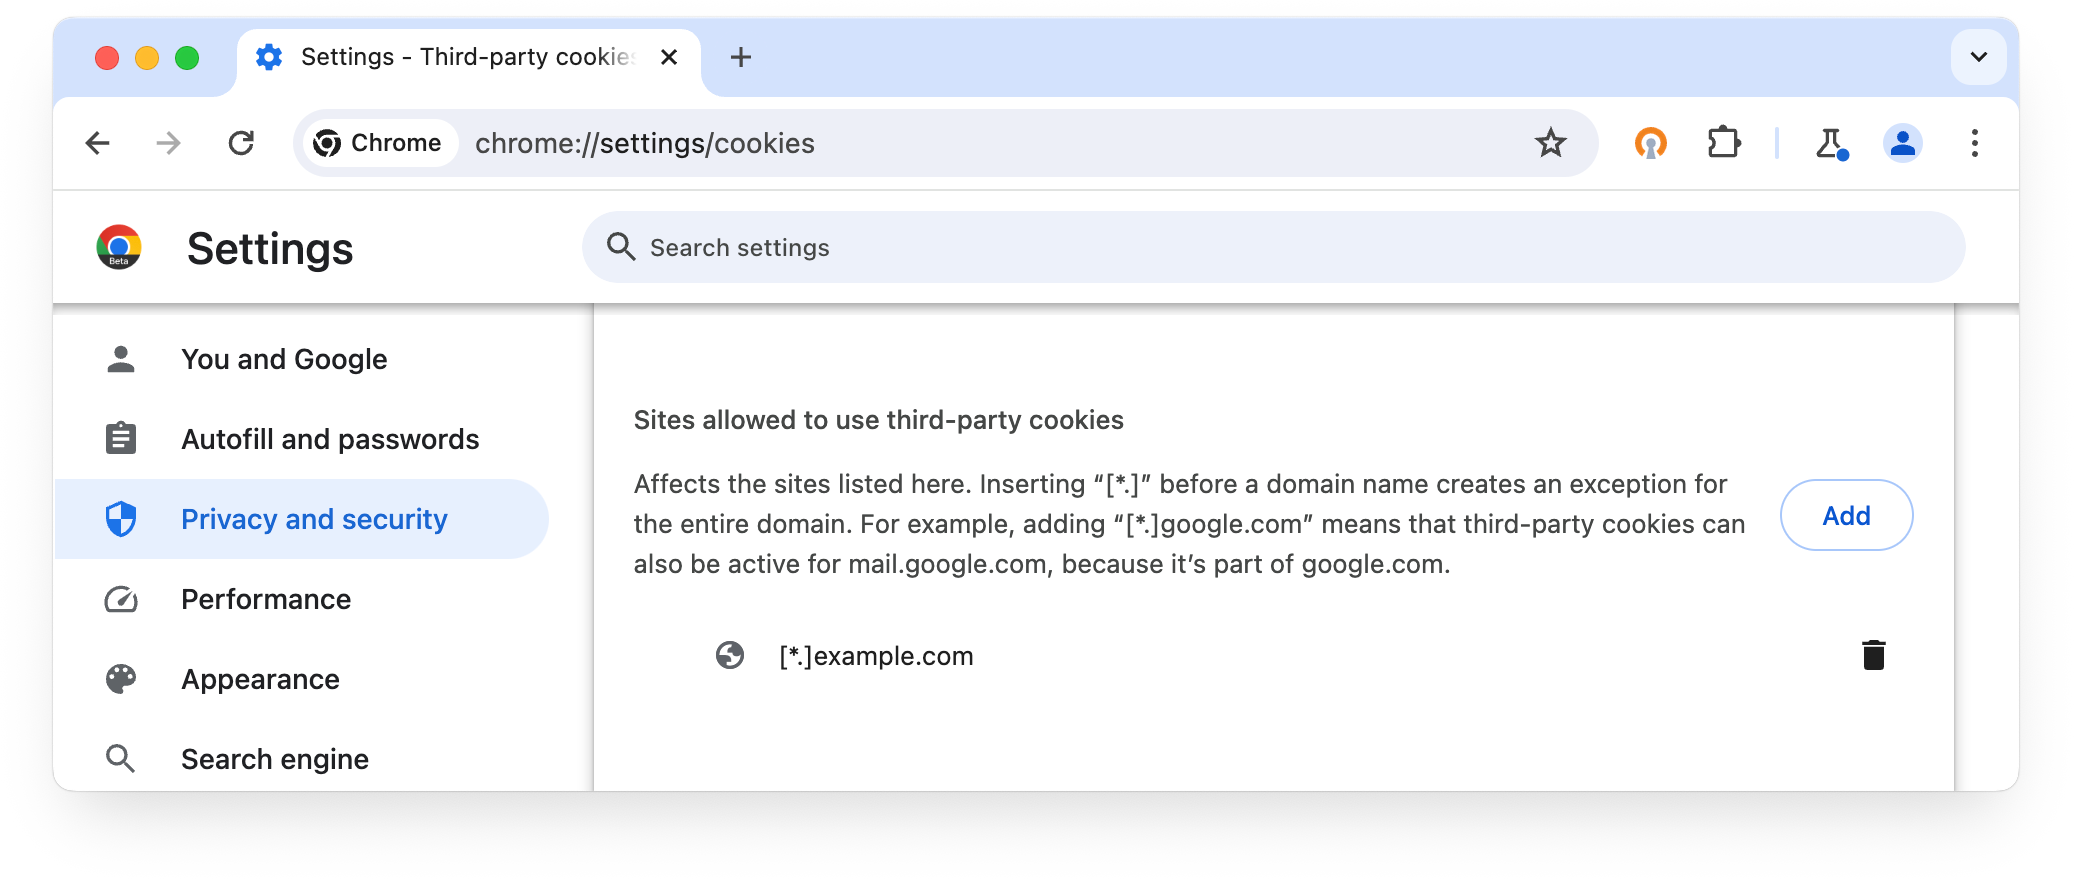 chrome://settings/cookies: साइटों को तीसरे पक्ष की कुकी इस्तेमाल करने की अनुमति है